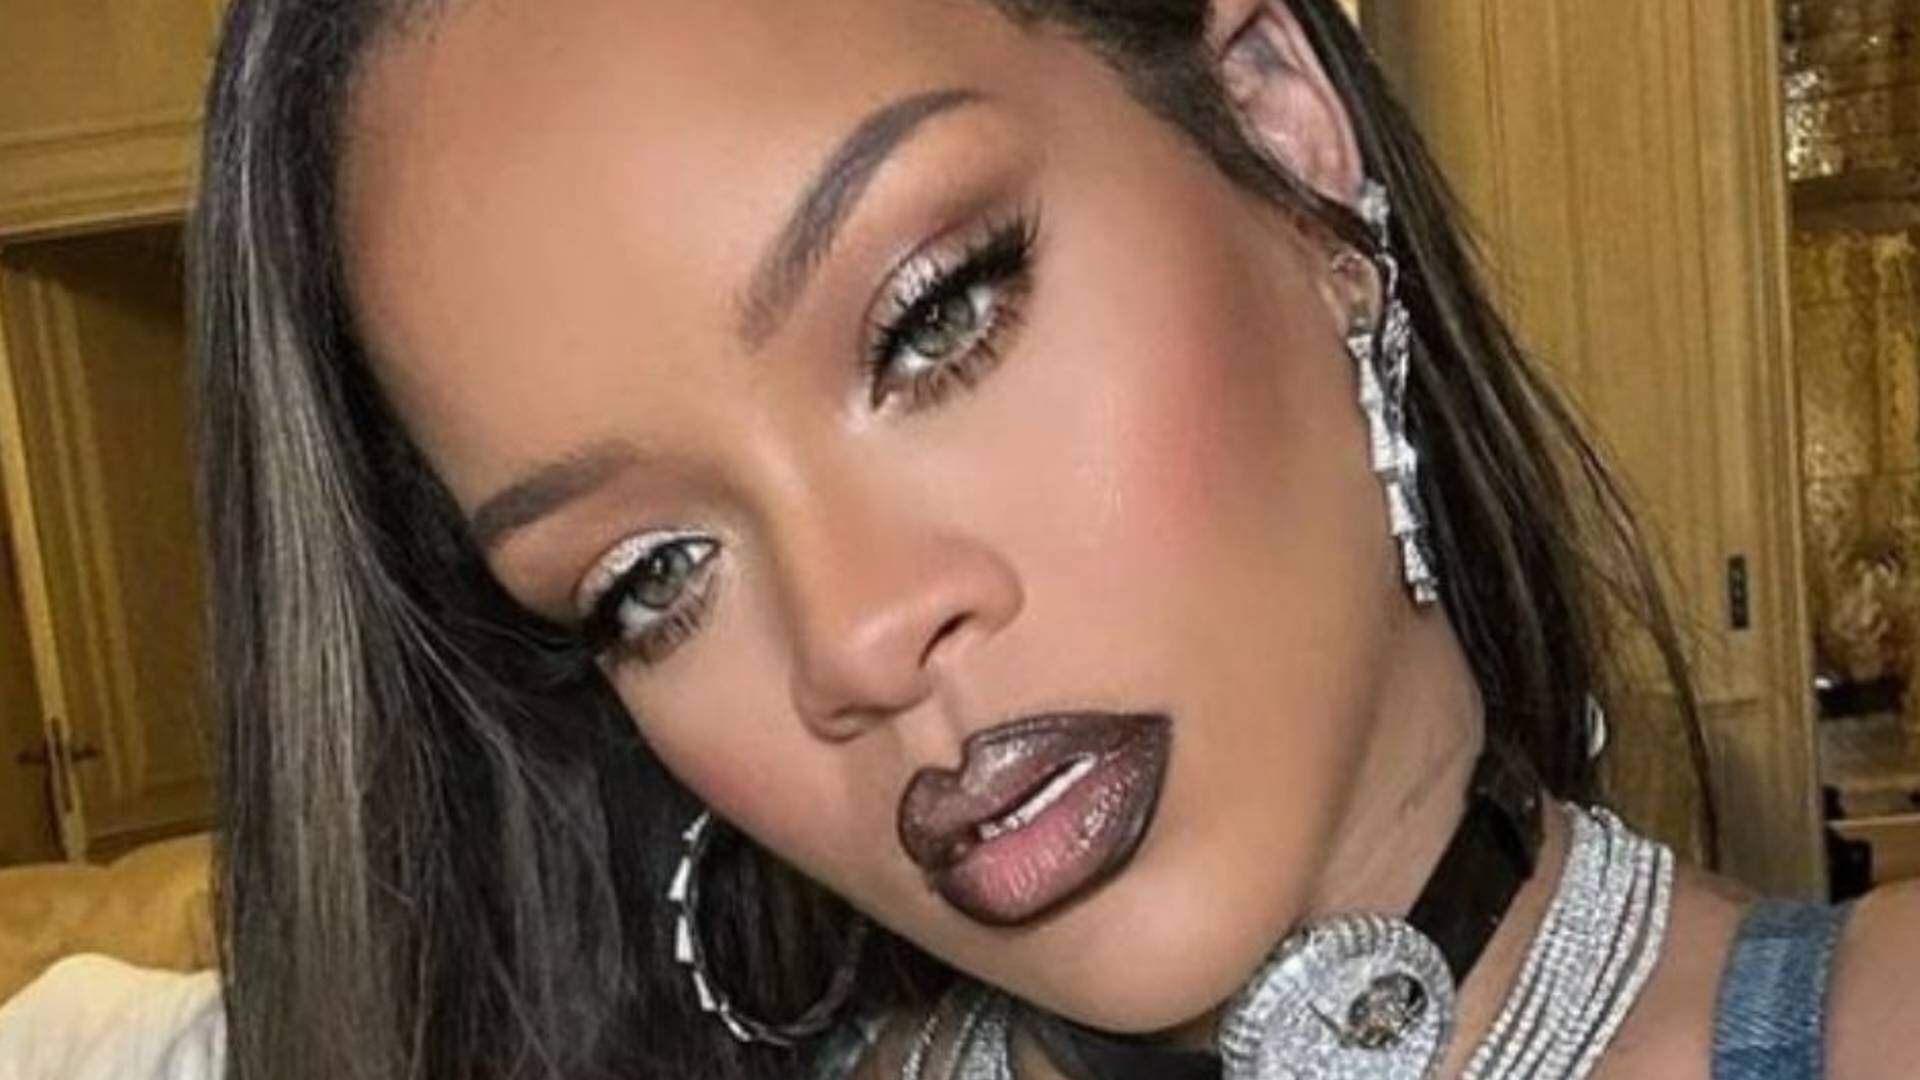 Grávida, Rihanna rouba a cena após ter atitude incomum em festa e